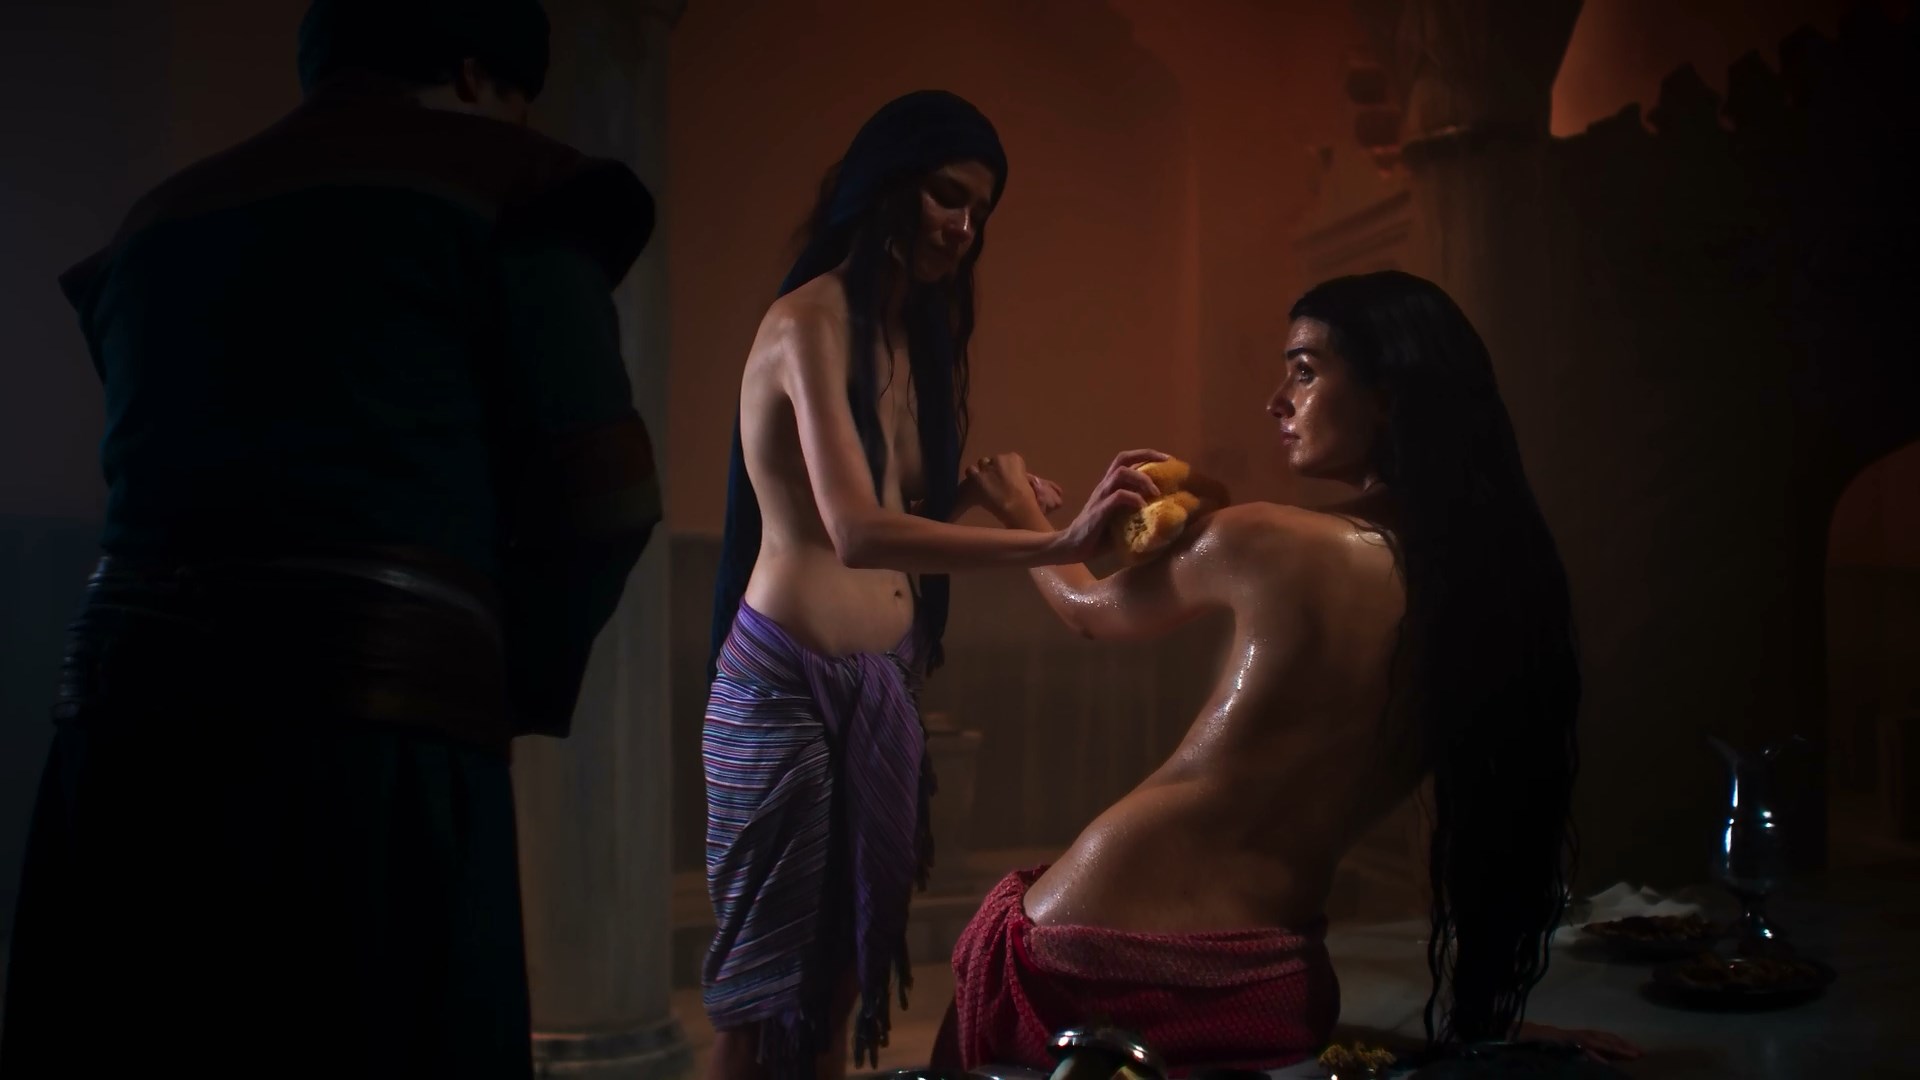 Turkish celeb nude scenes